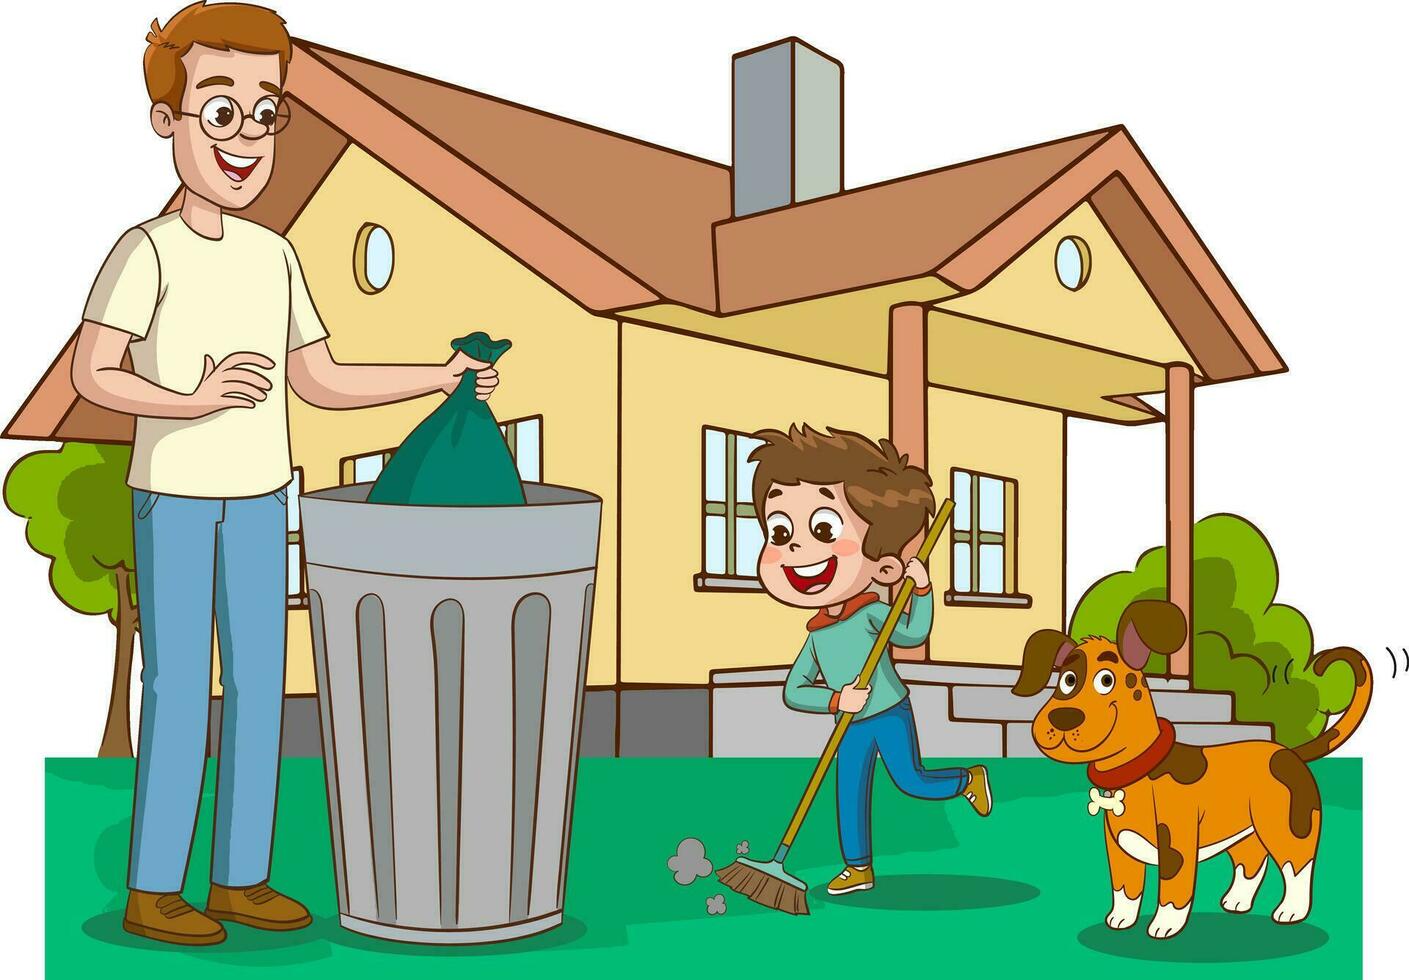 vektor illustration av far och barn rengöring de hus med en sopor kan och en hund.